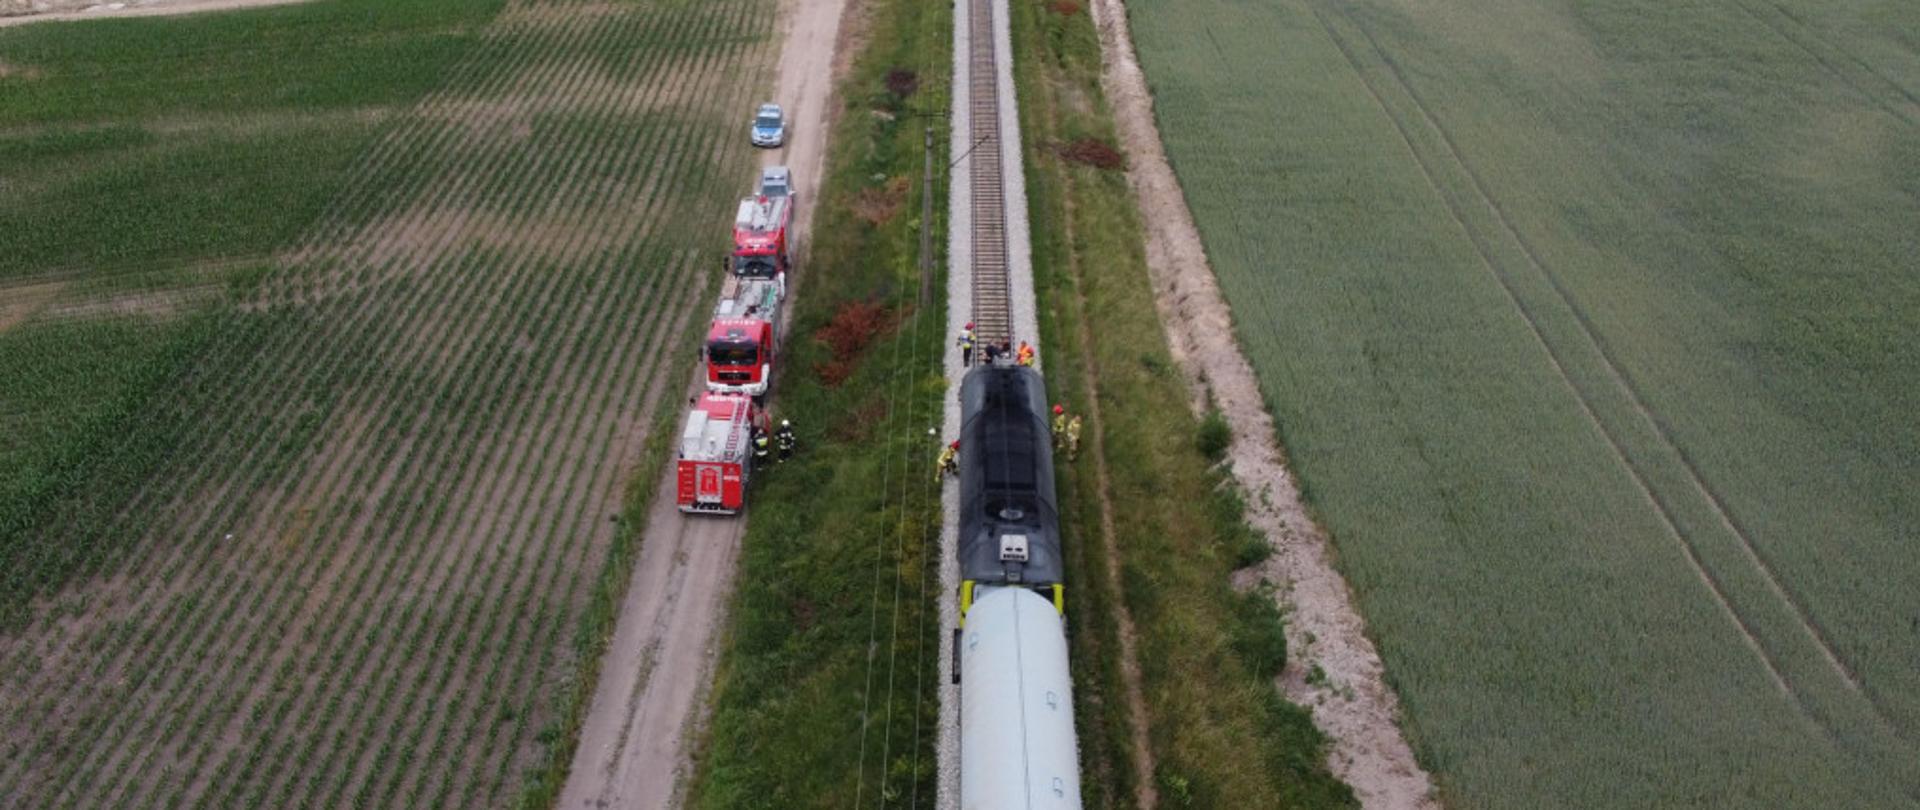 Zdjęcie przedstawia jednotorowy szlak kolejowy na której stoi lokomotywa z zespołem wagonów. Wokół lokomotywy widoczni strażacy, którzy wykonują zadania służbowe. Na drodze gruntowej równoległej do torowiska stoją samochody służb ratowniczych. 